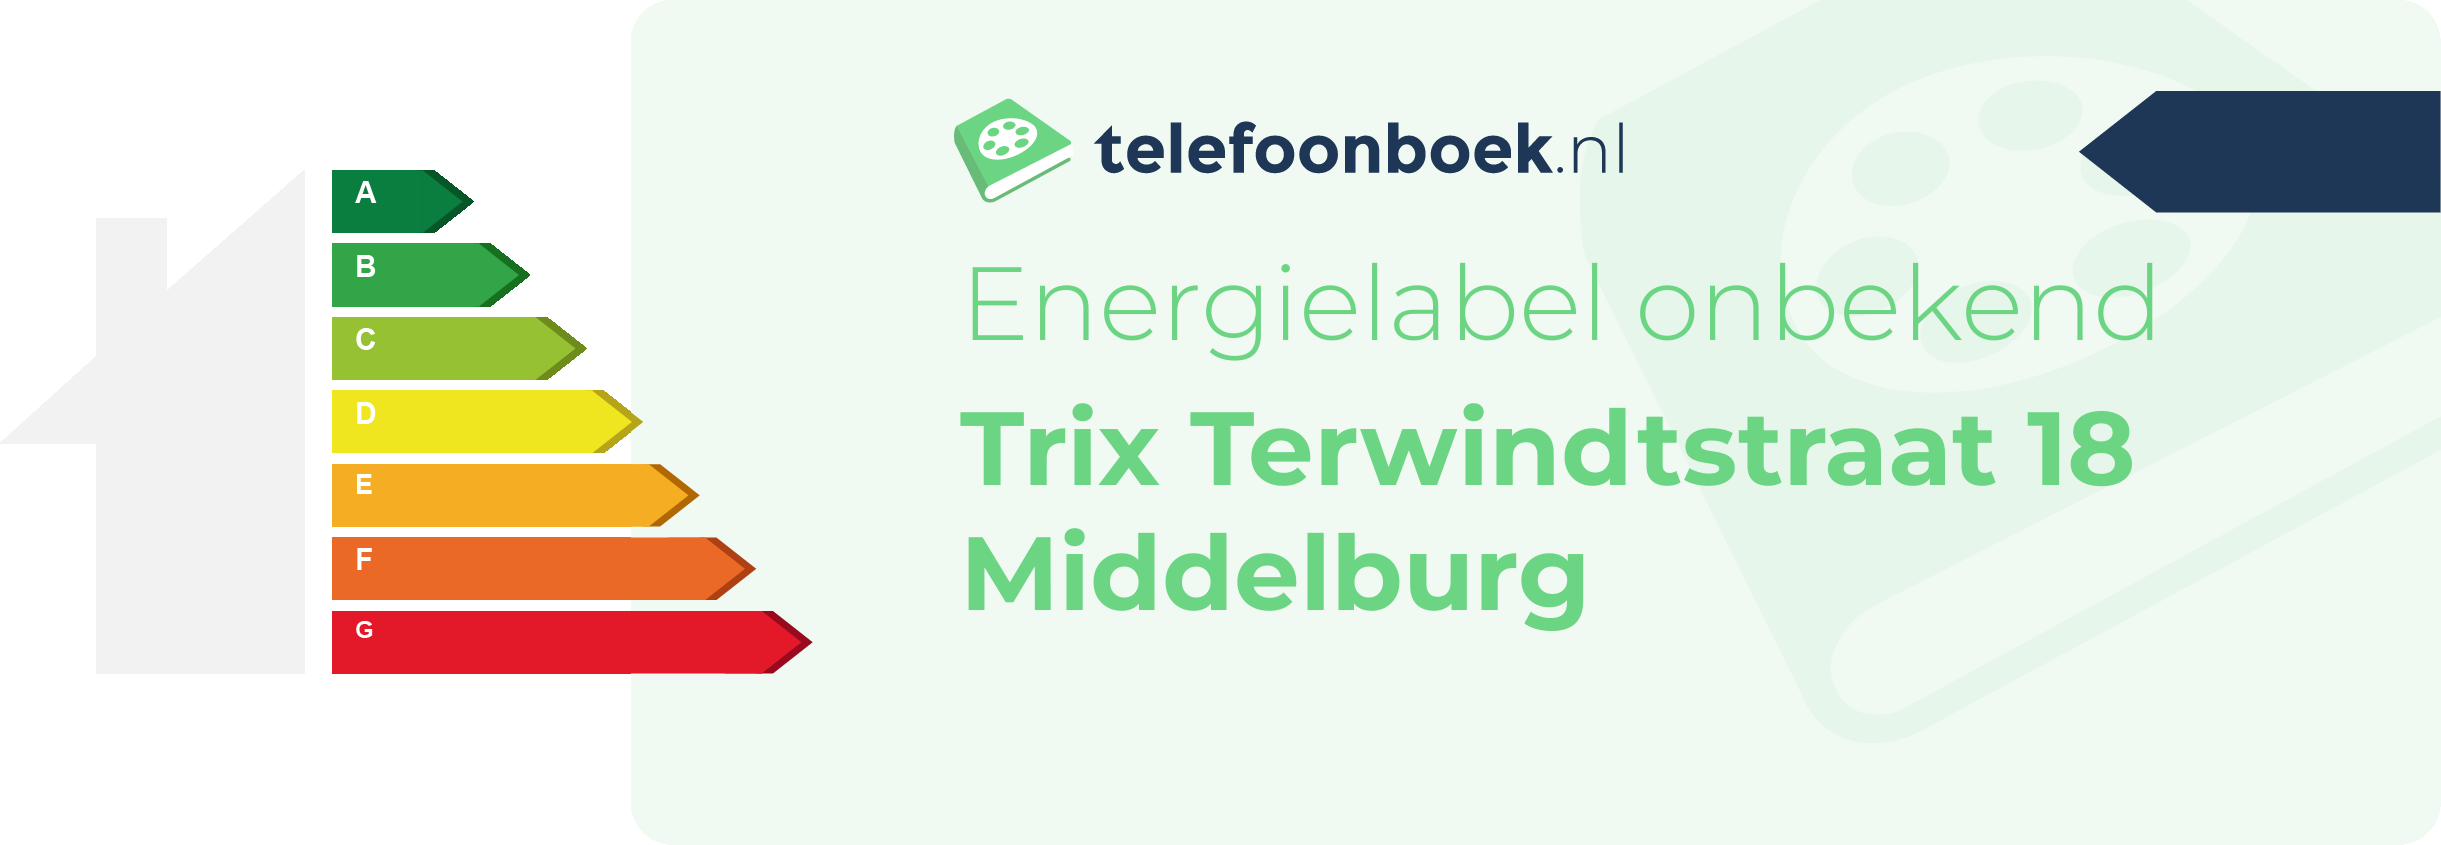 Energielabel Trix Terwindtstraat 18 Middelburg